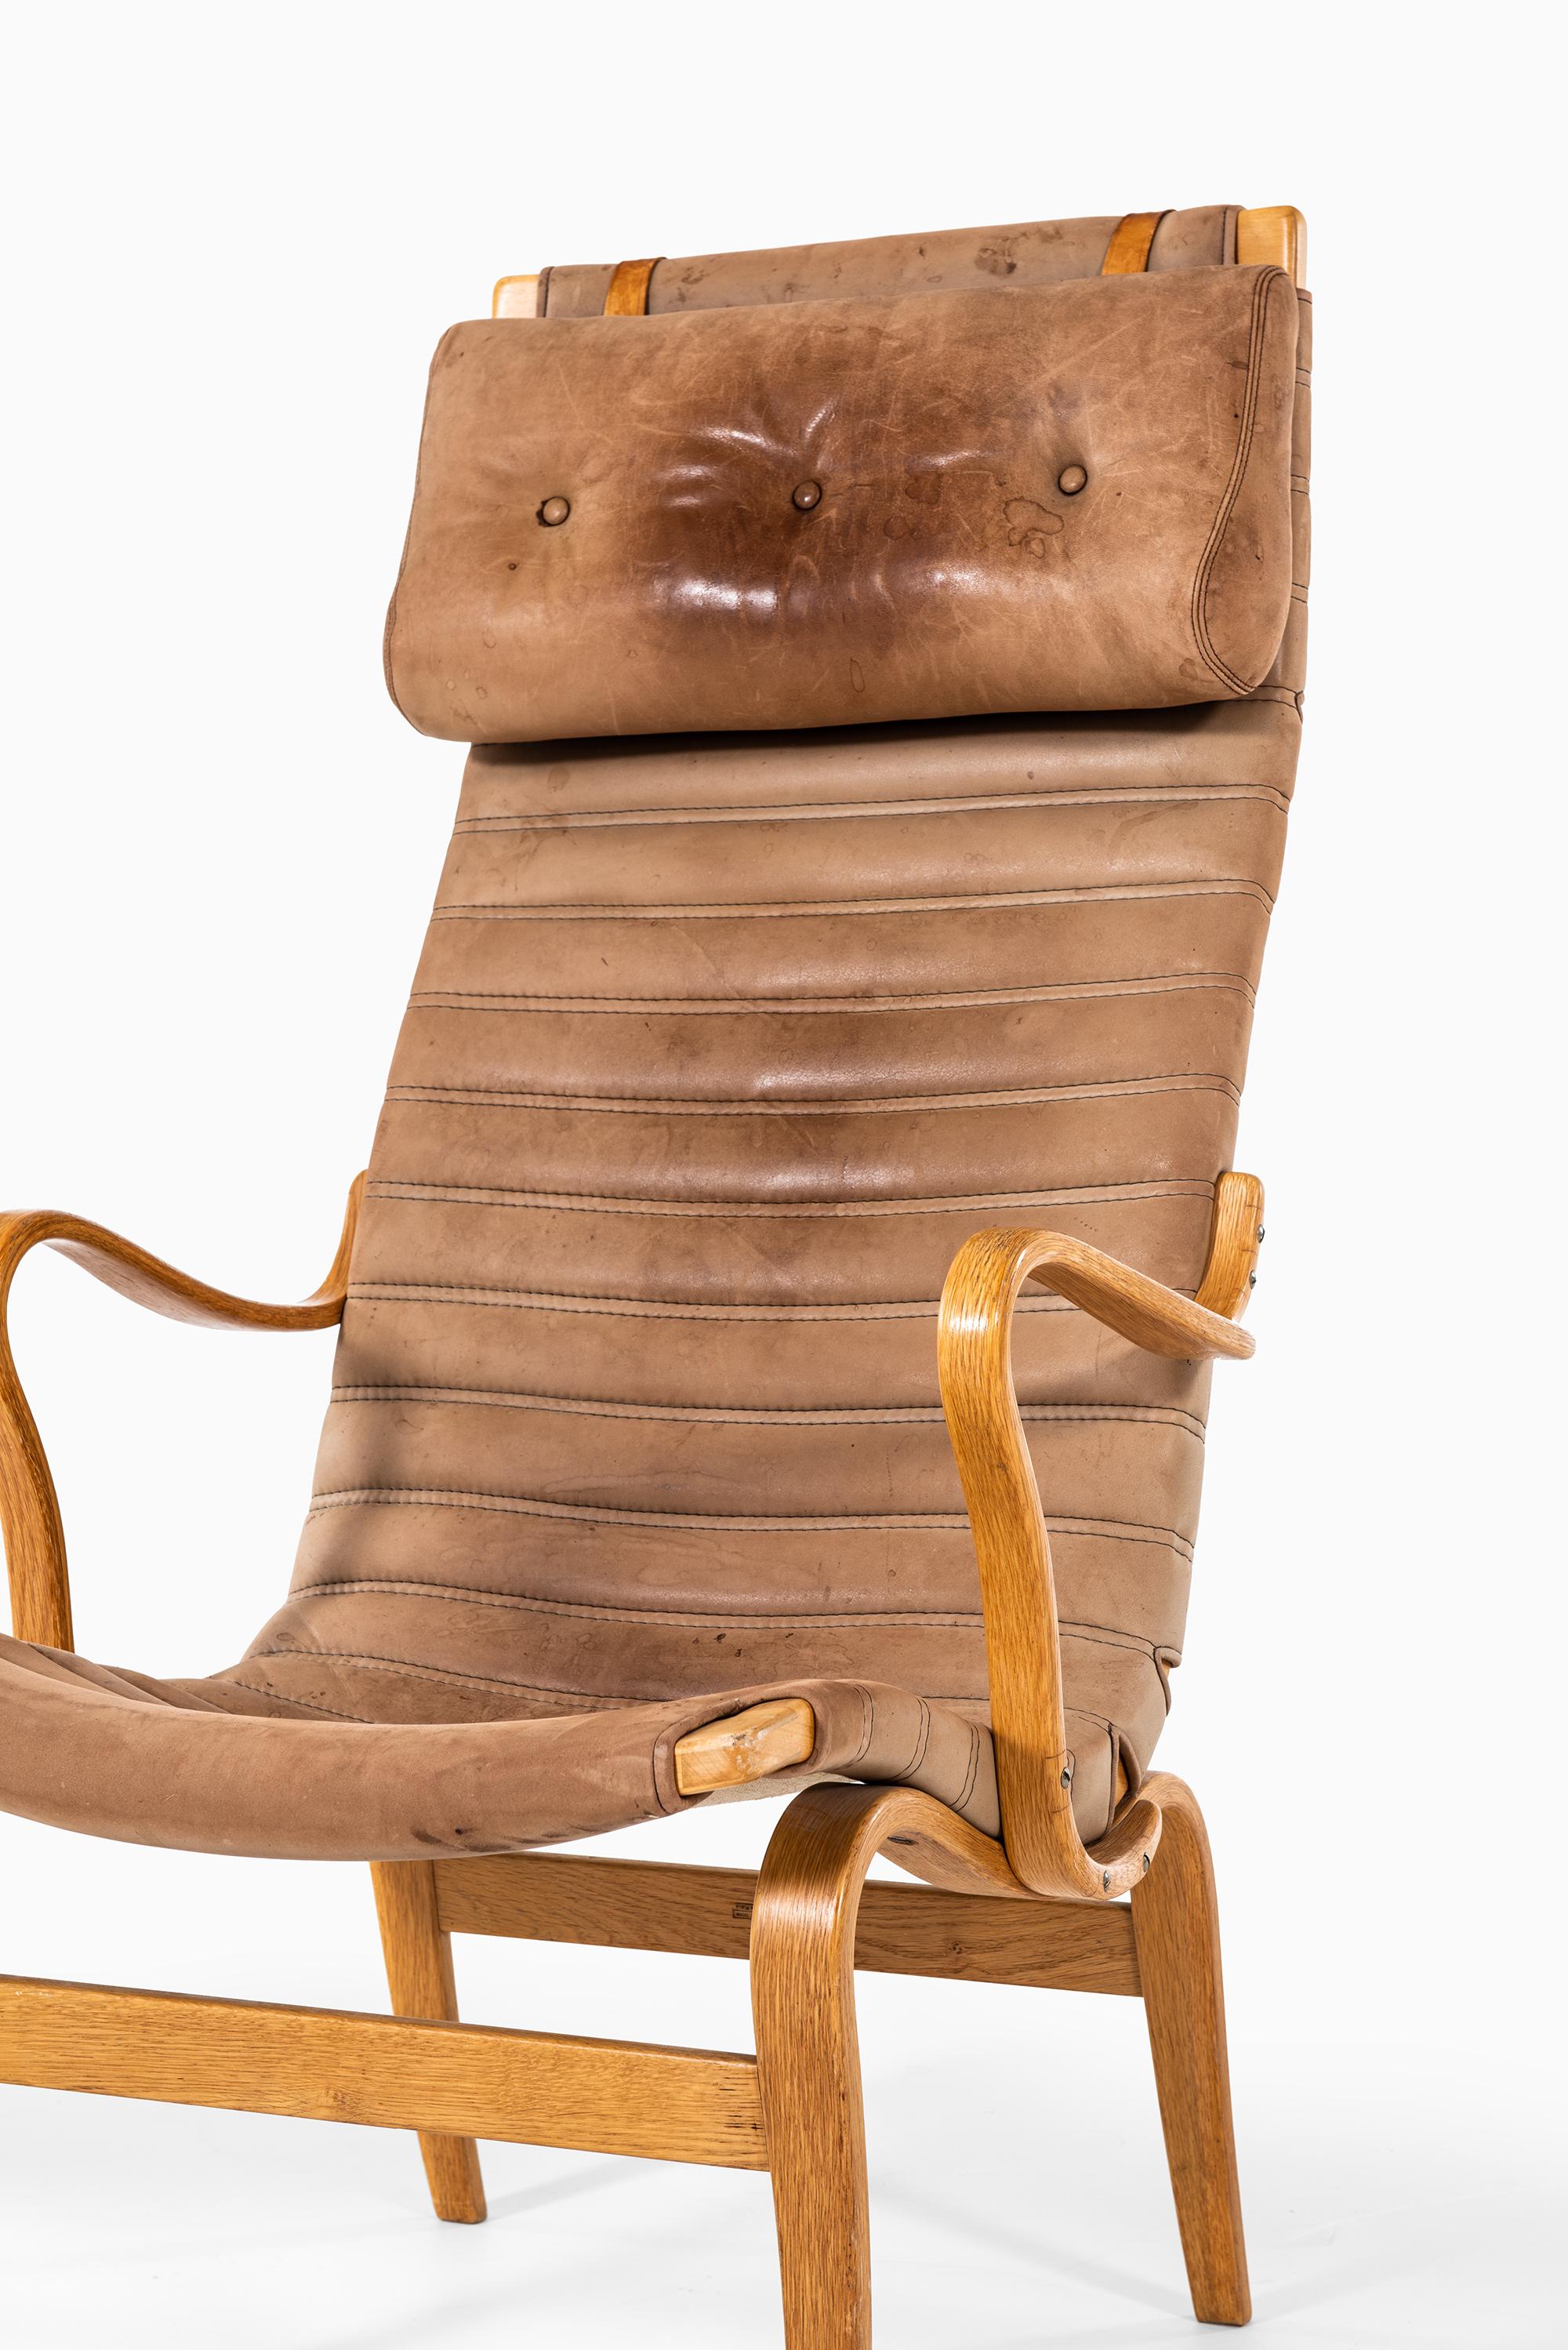 Rare paire de fauteuils modèle Eva hög conçue par Bruno Mathsson. Produit par Karl Mathsson AB à Värnamo, Suède.